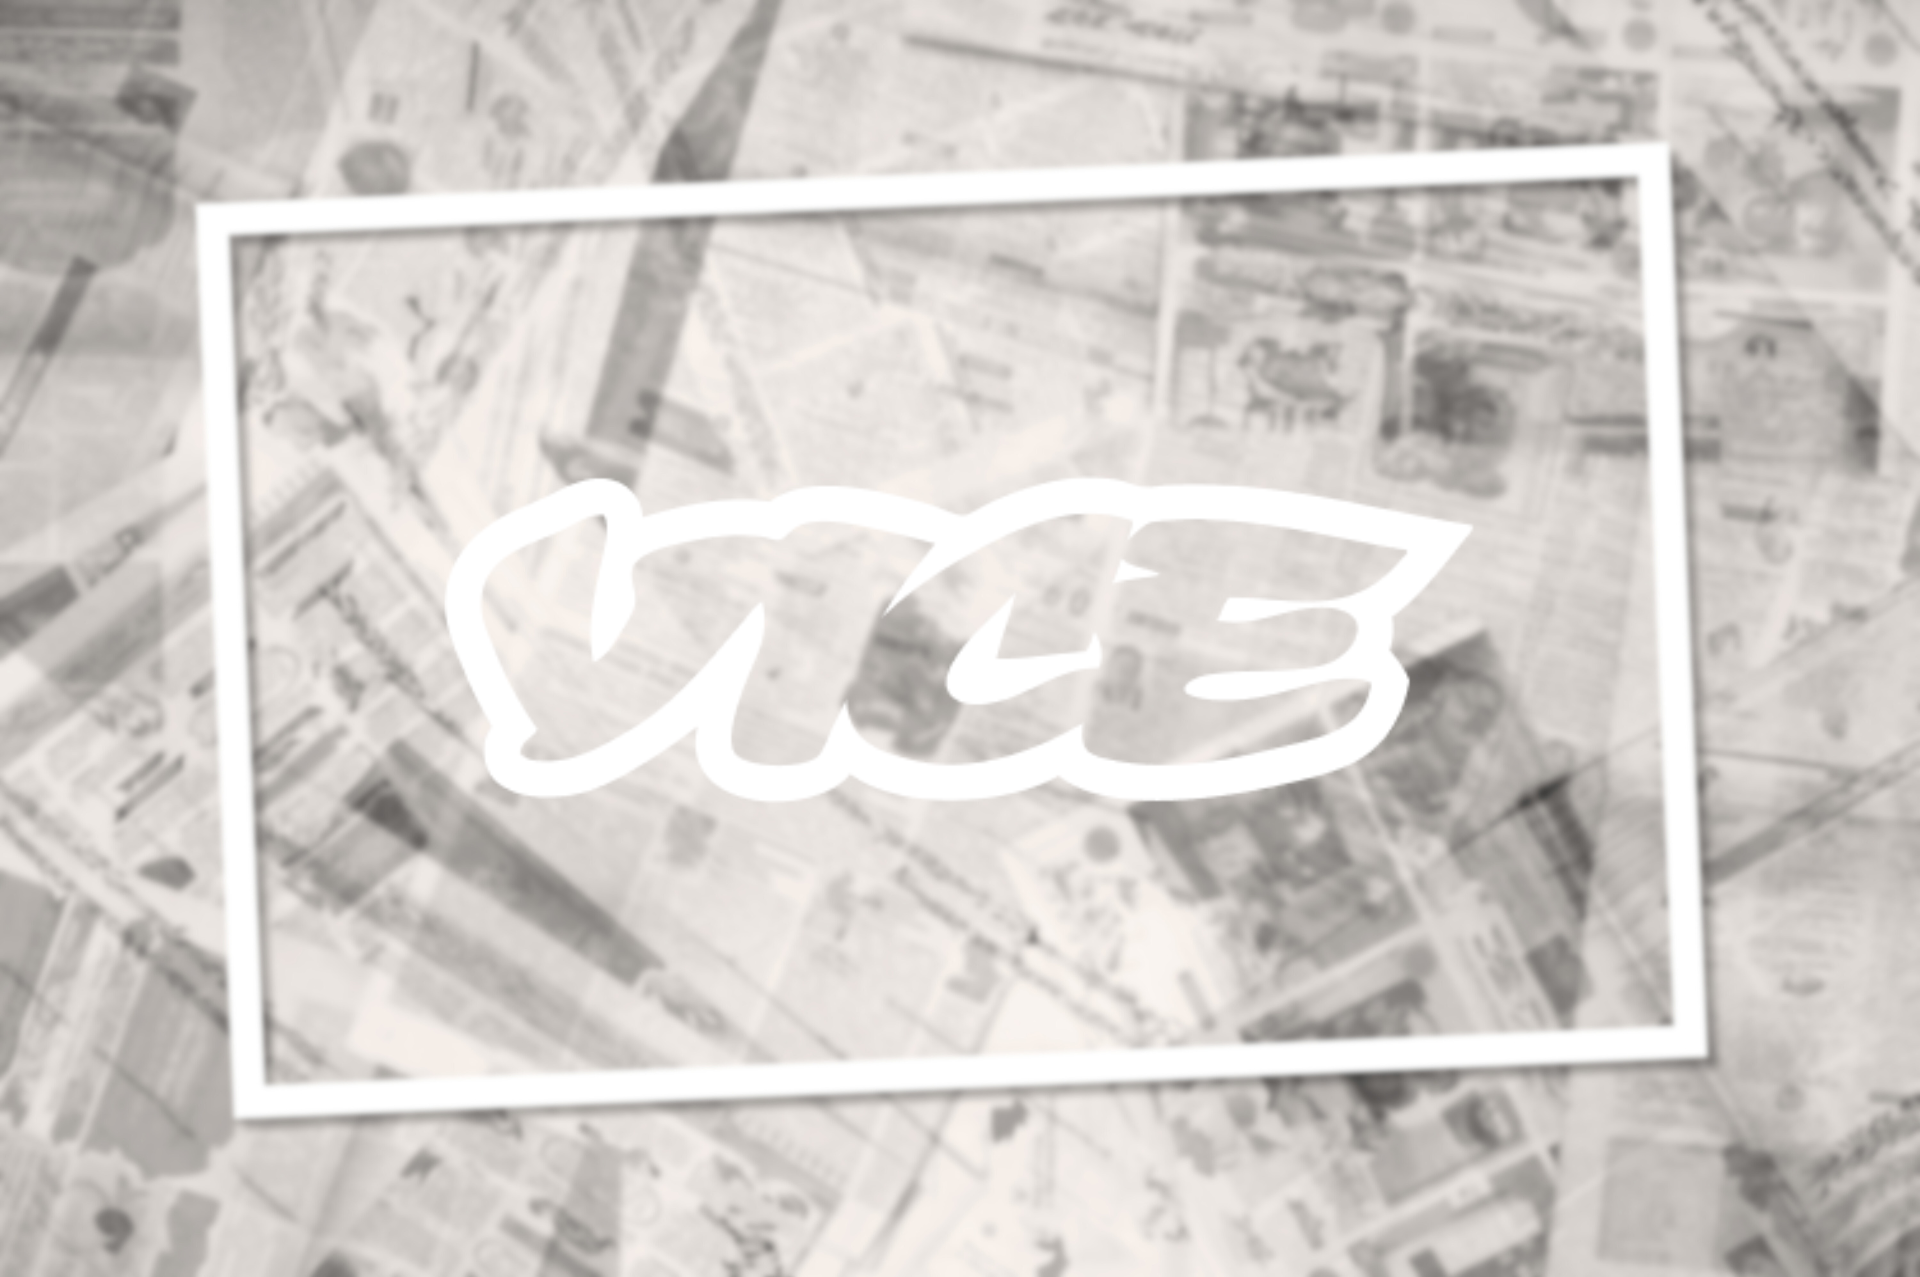 Vice Media Group estaría preparándose para solicitar la bancarrota